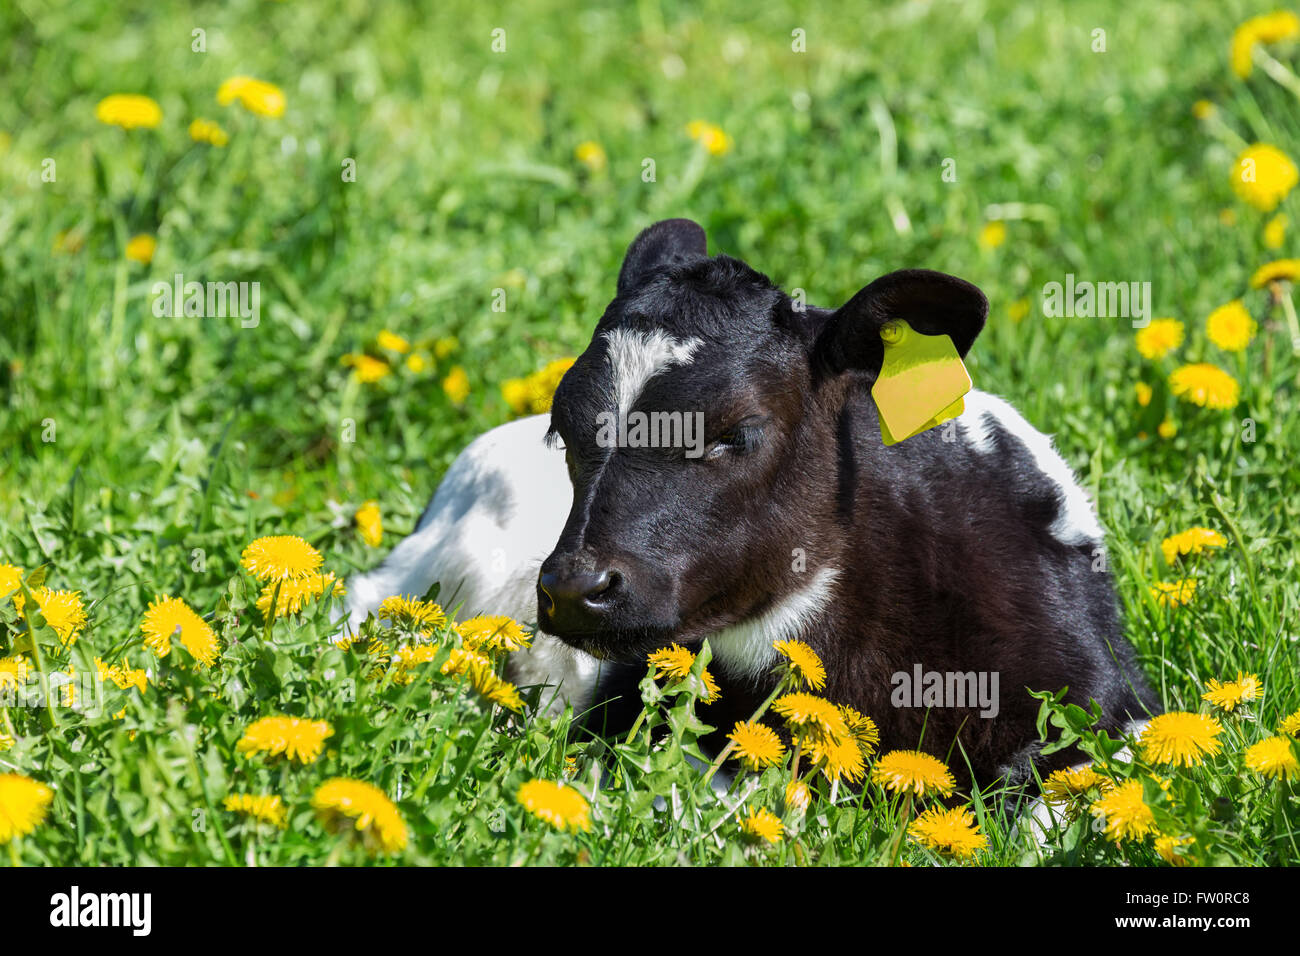 Di vitello neonato sdraiato in erba verde con fiori gialli di tarassaco Foto Stock